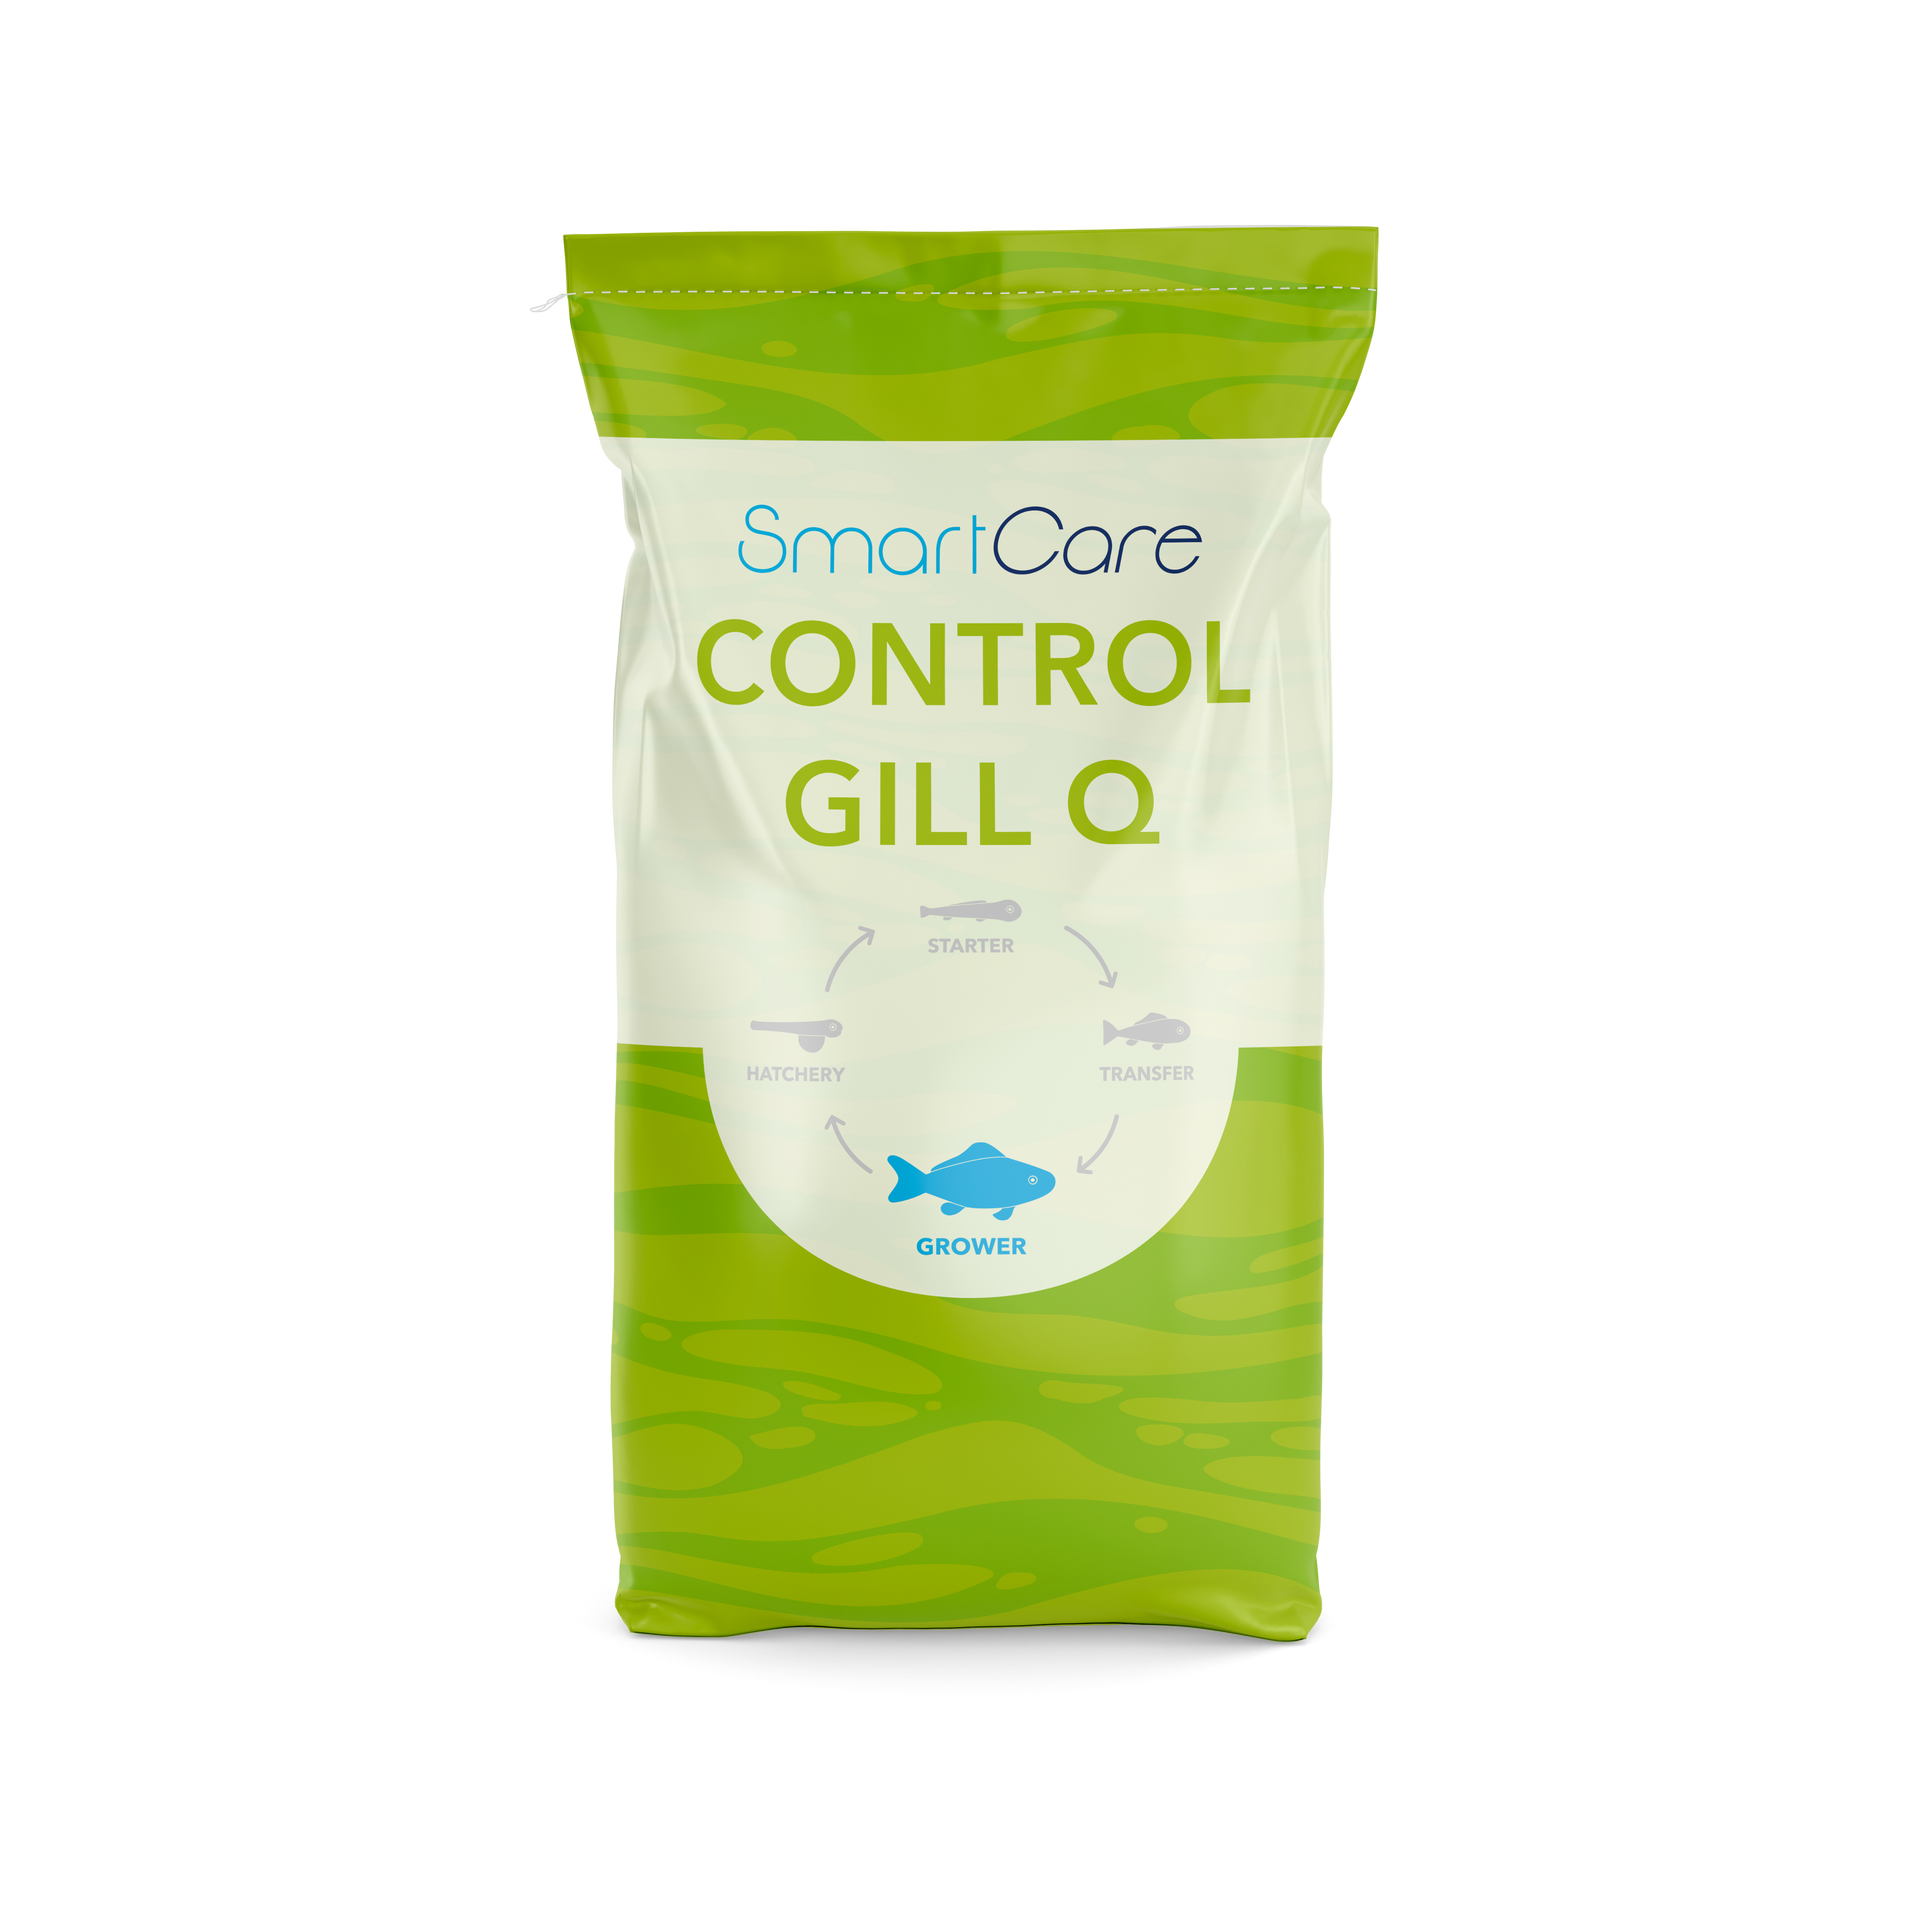 SmartCare Control Gill Q health feed for salmon